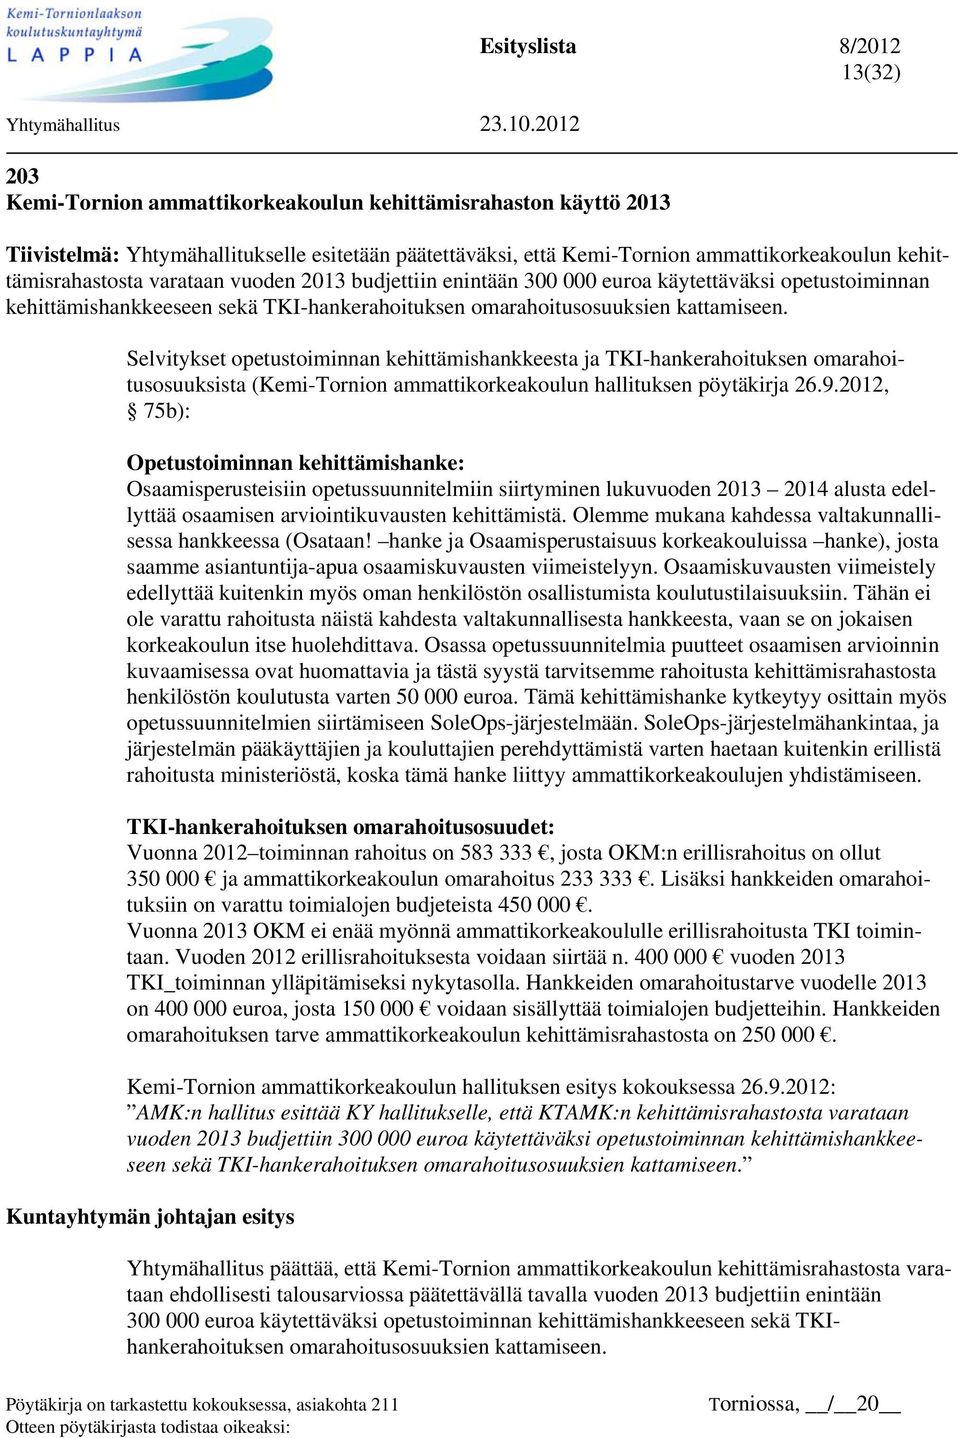 Selvitykset opetustoiminnan kehittämishankkeesta ja TKI-hankerahoituksen omarahoitusosuuksista (Kemi-Tornion ammattikorkeakoulun hallituksen pöytäkirja 26.9.